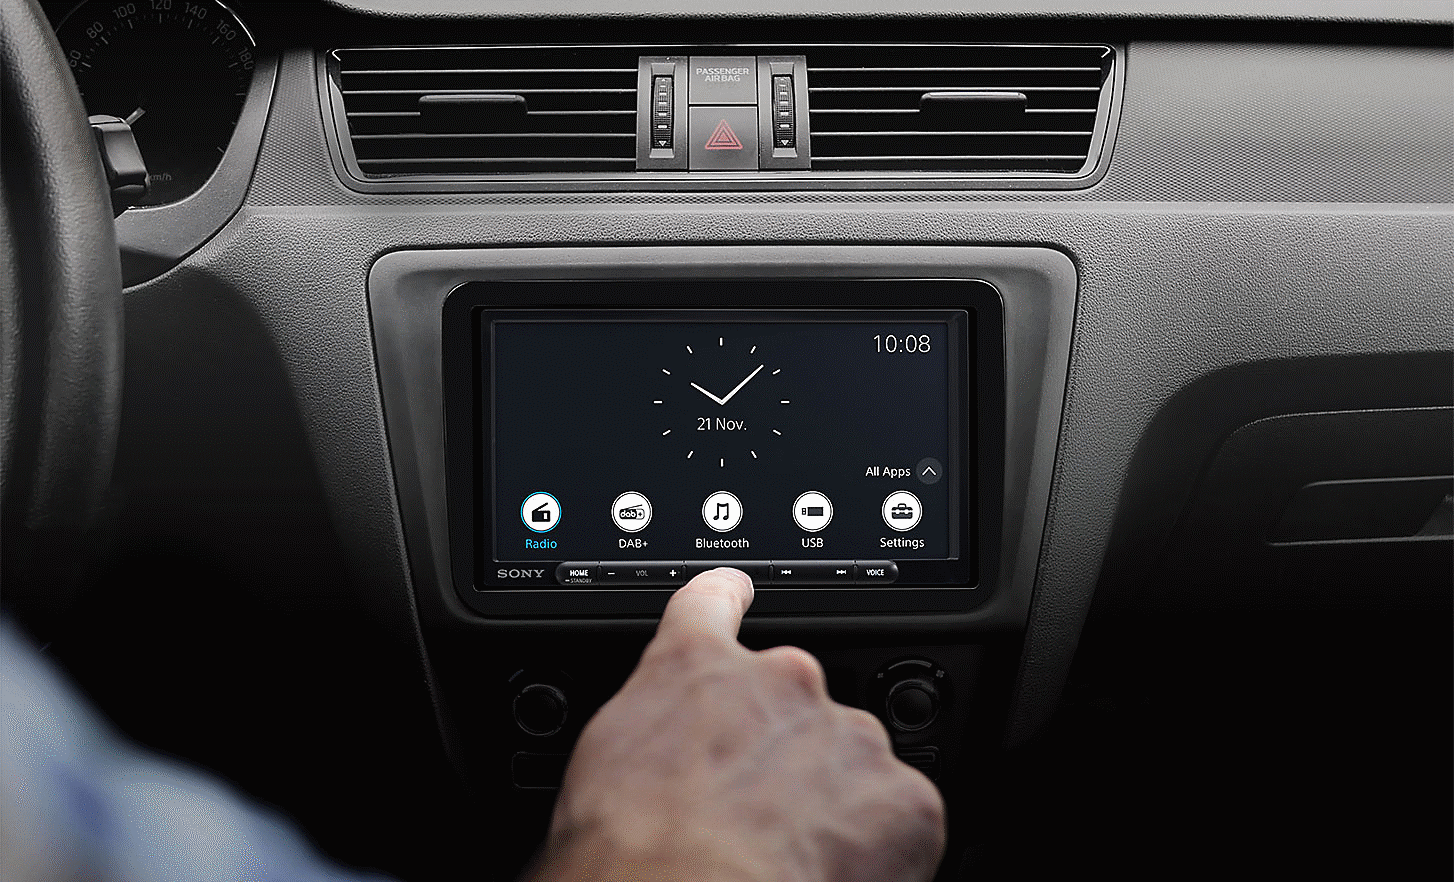 Slika uređaja XAV-AX4050 na nadzornoj ploči sa satom i više gumba na zaslonu te rukom koja lebdi u prednjem planu